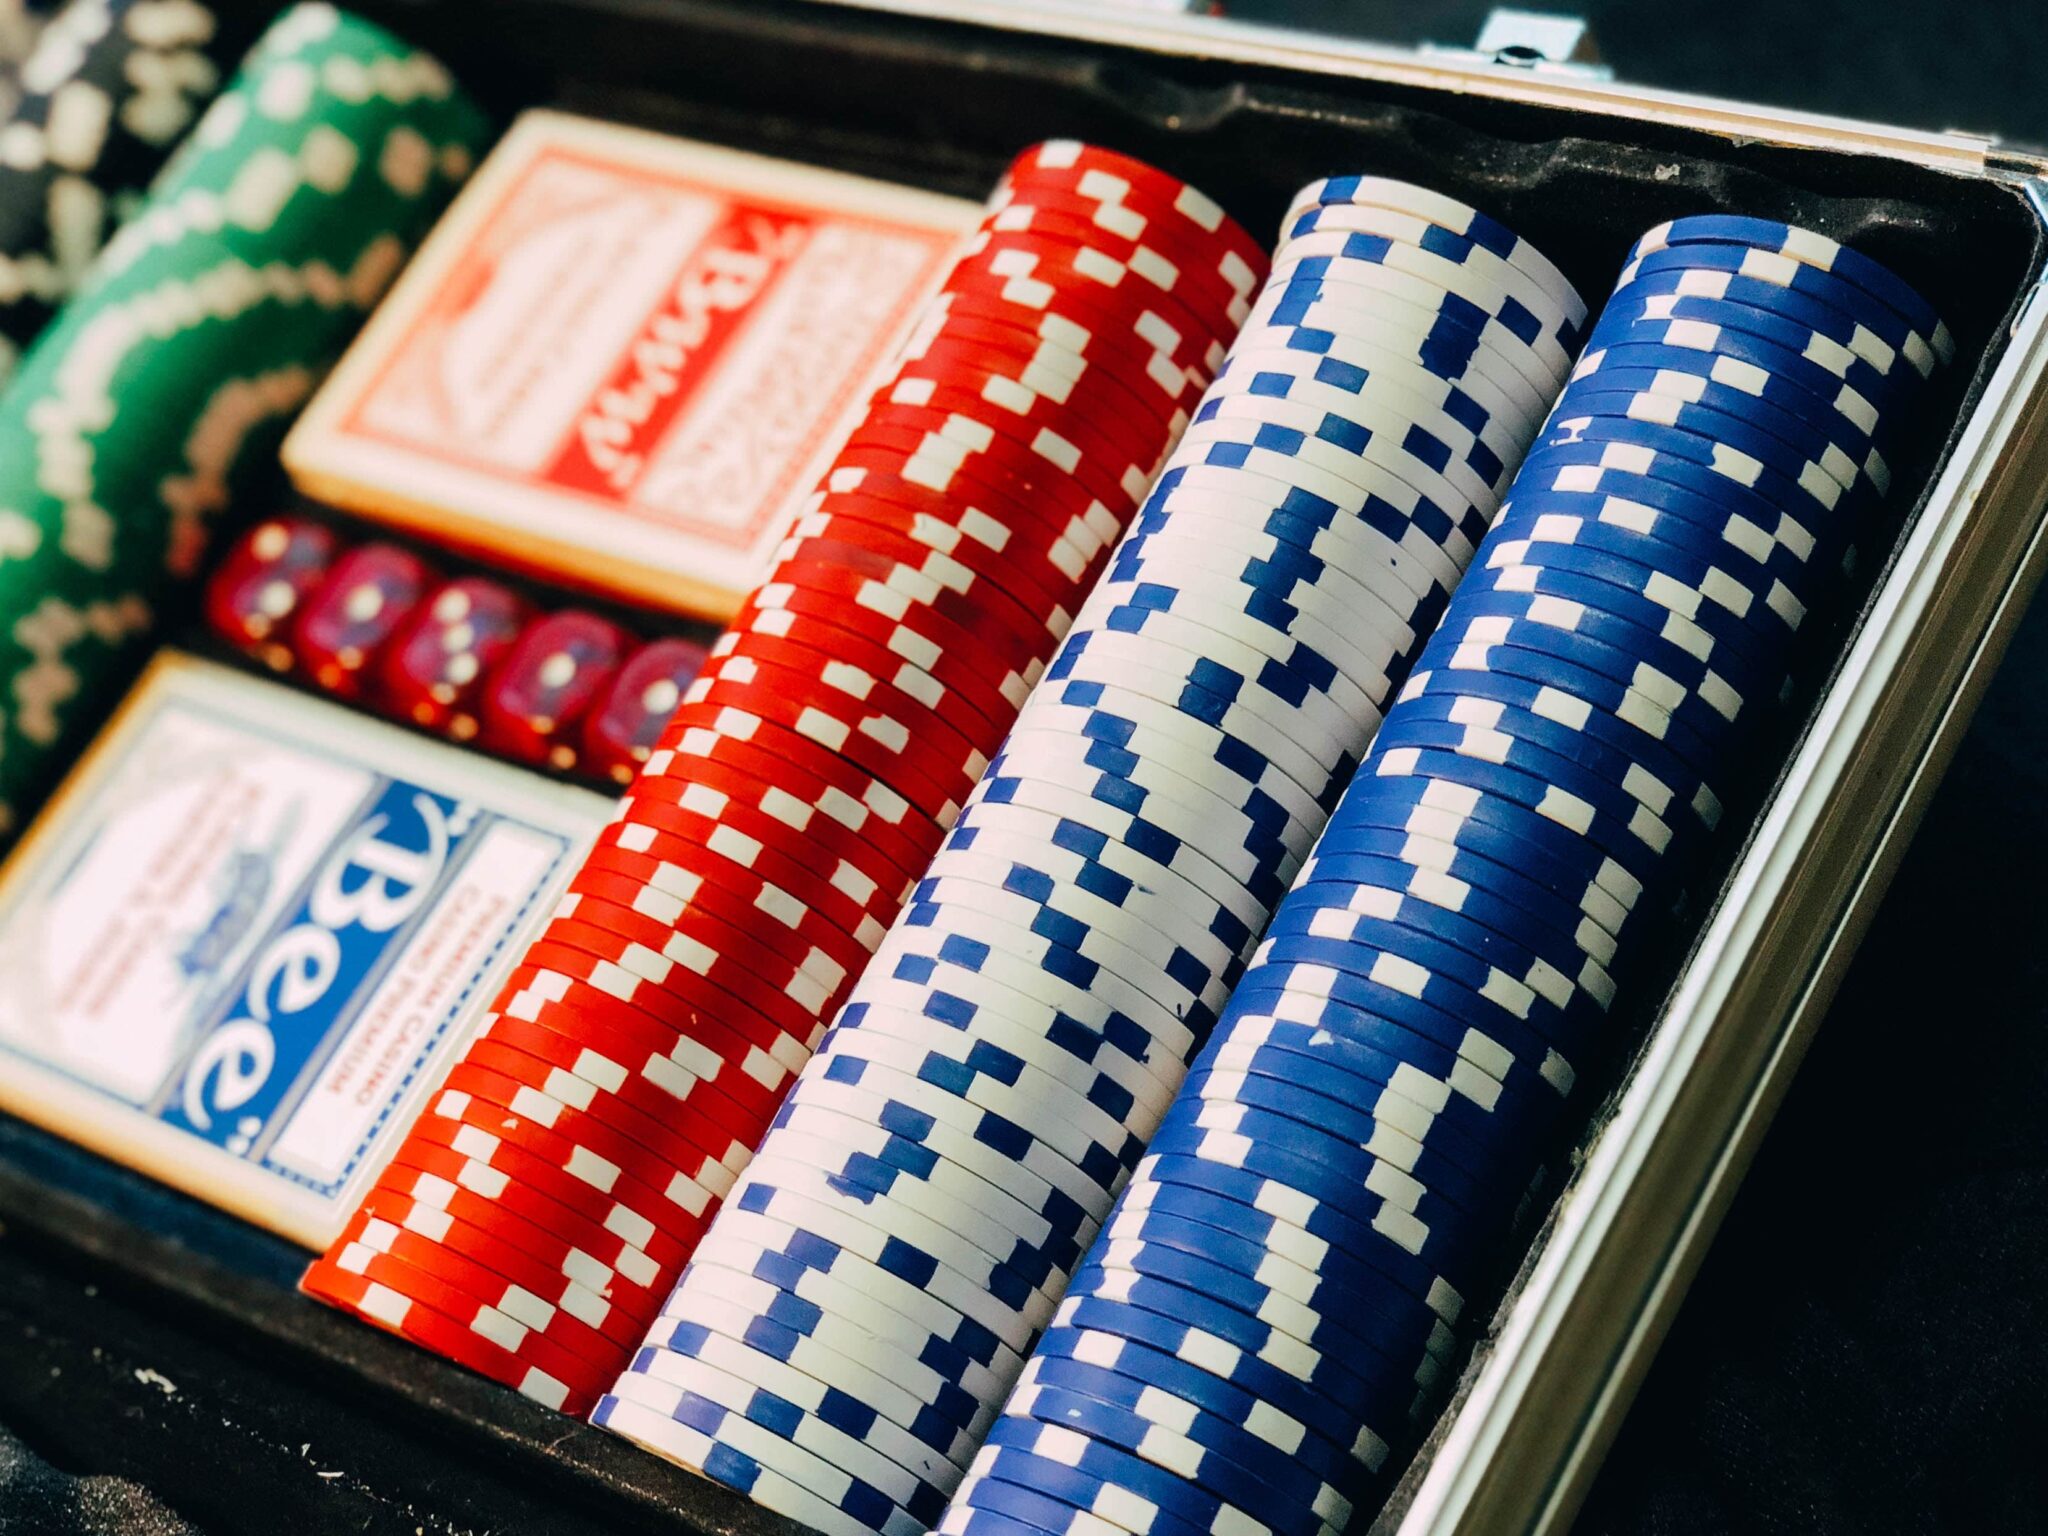 luckyland slots casino apk download